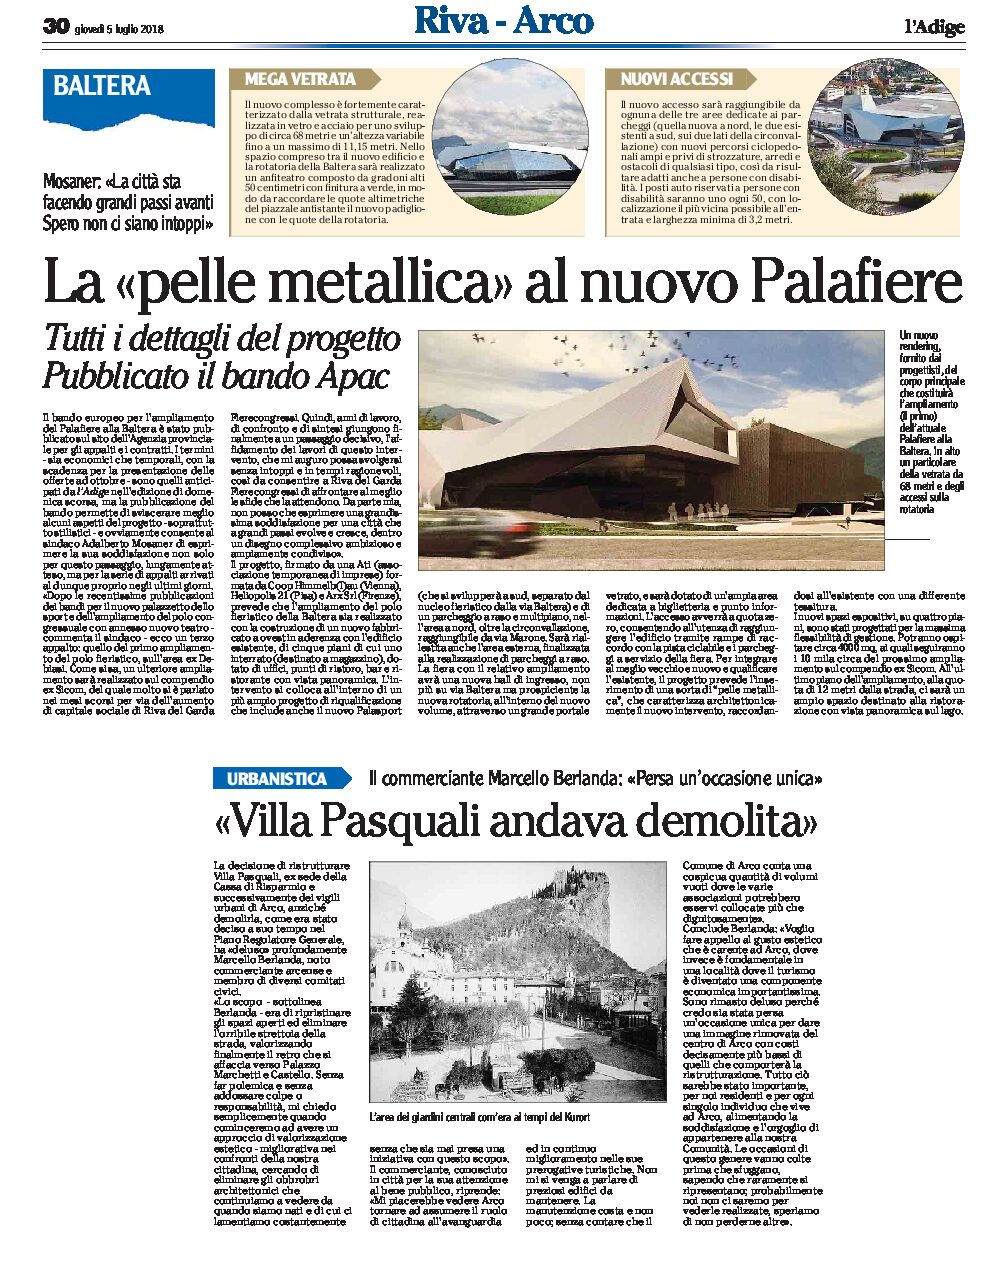 Arco: Villa Pasquali andava demolita. Baltera, rendering nuovo Palafiere